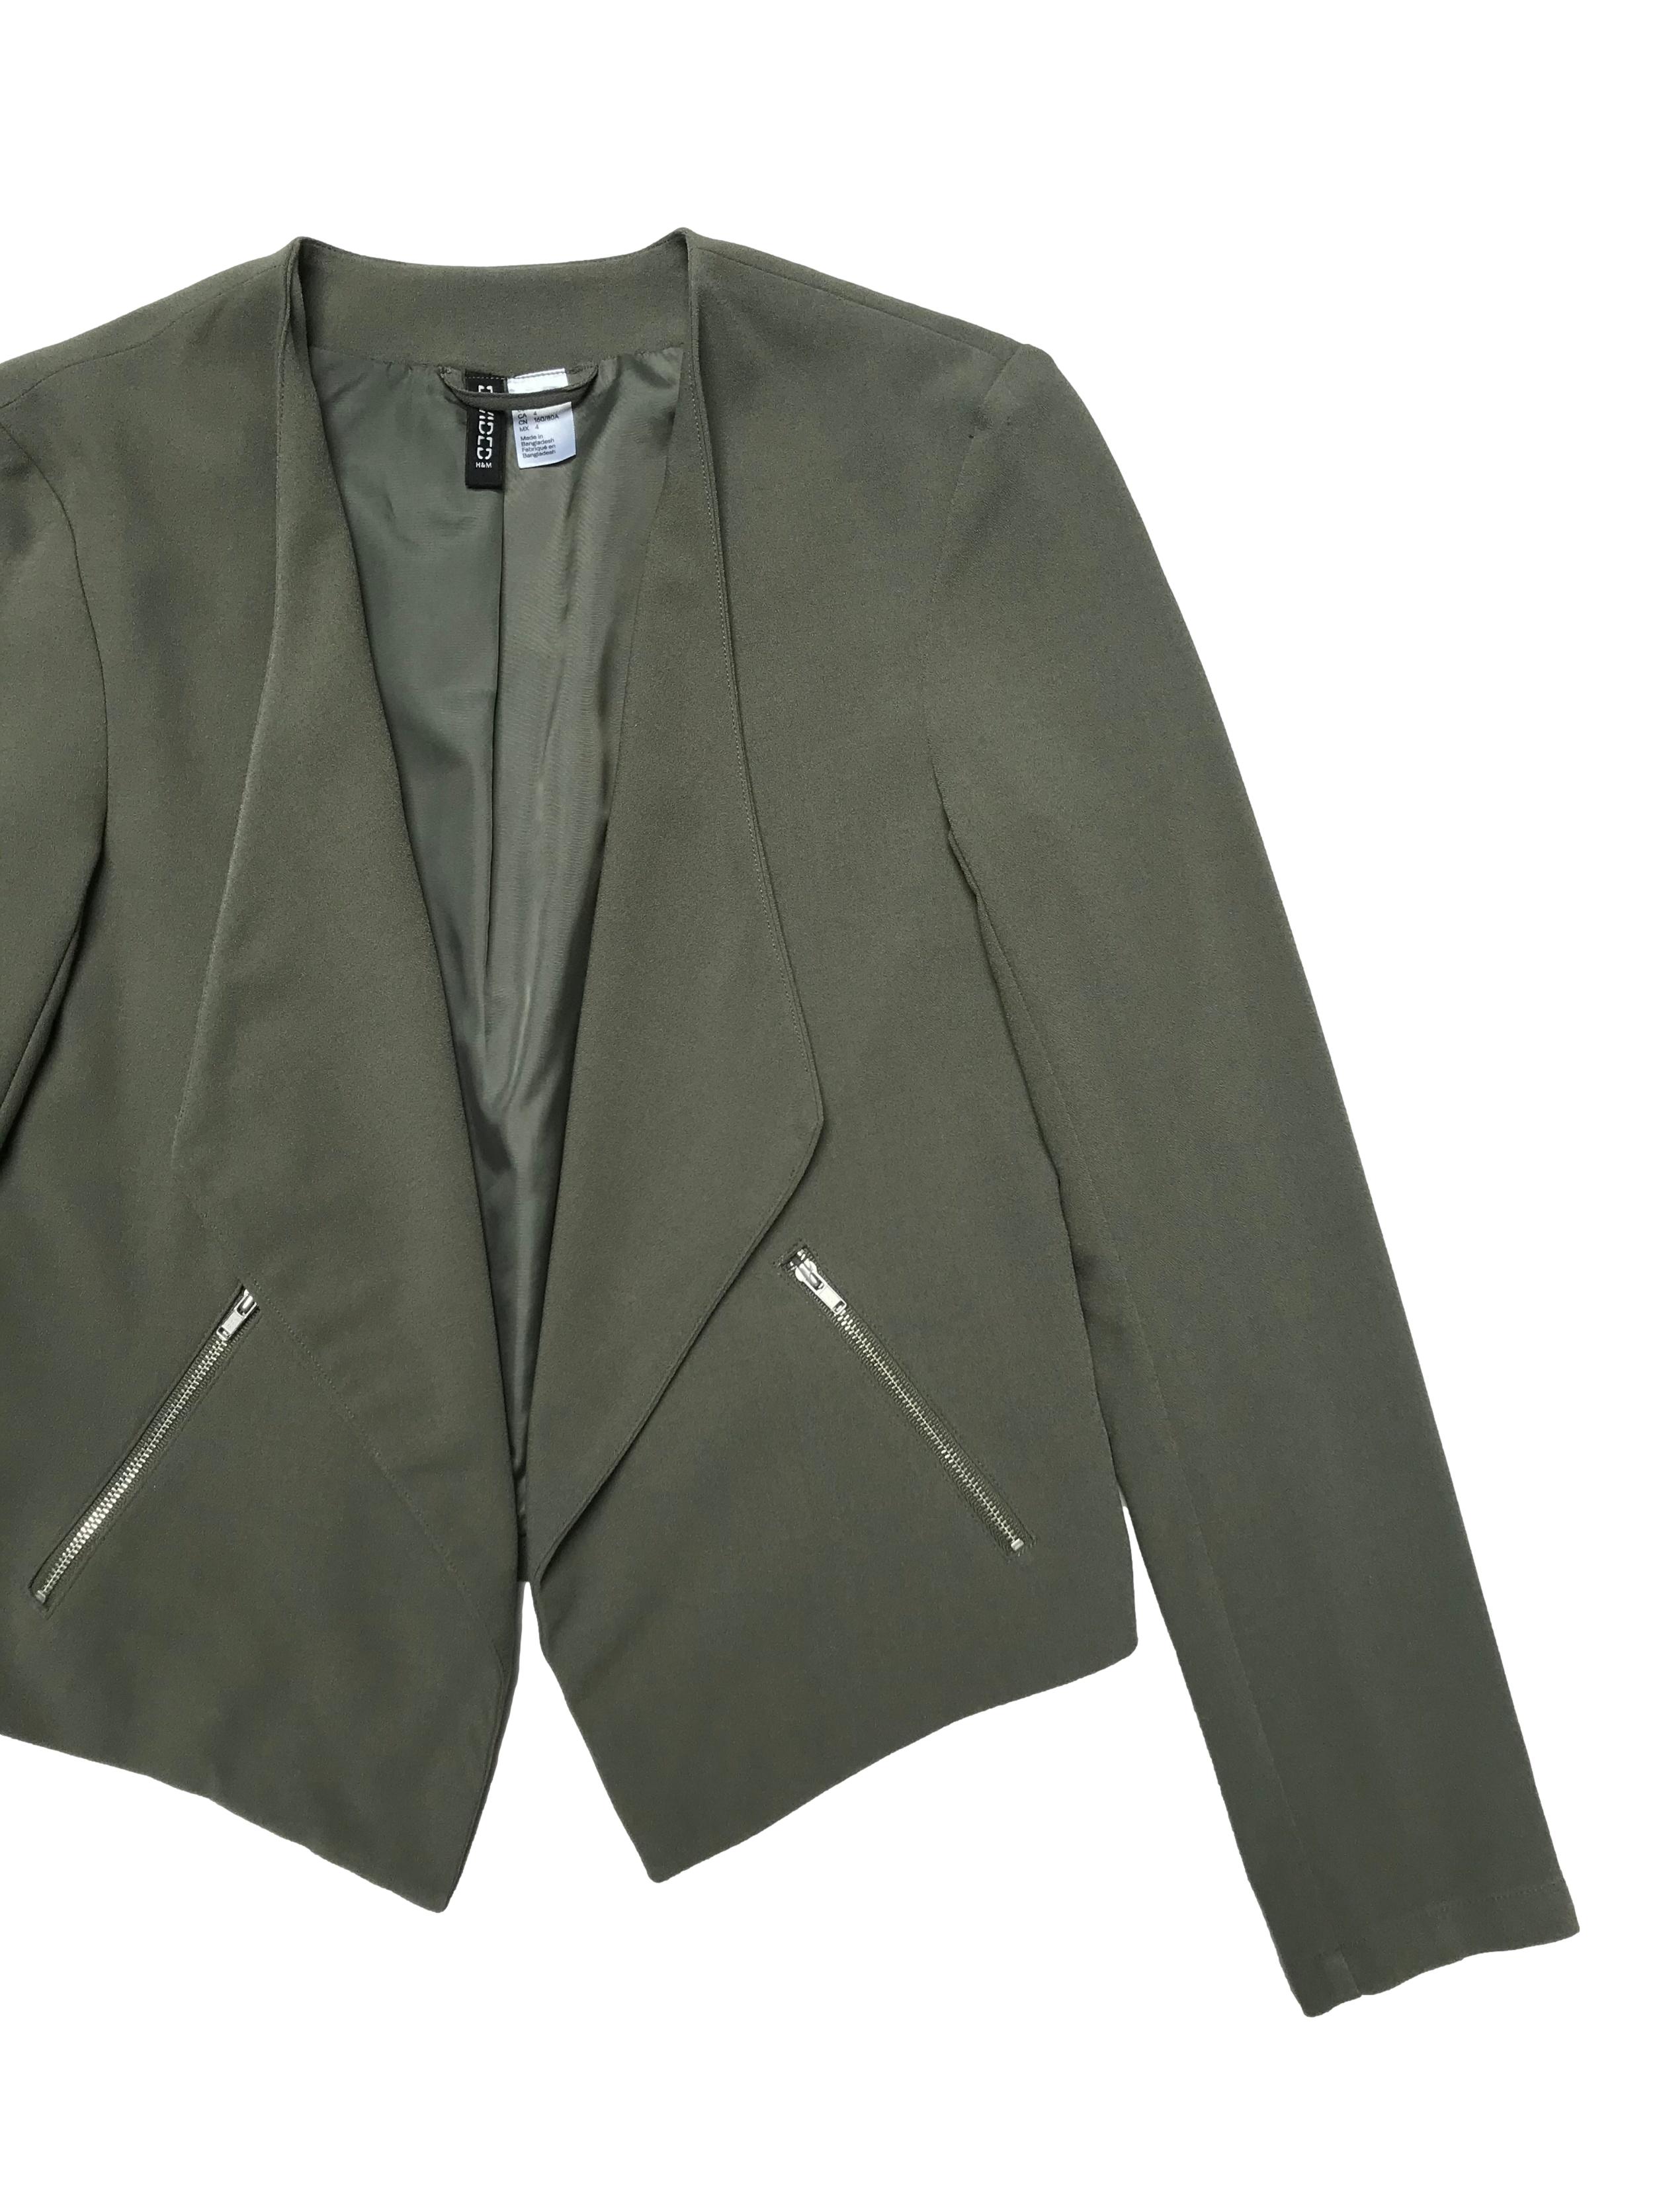 Blazer H&M verde, forrado, con basta asimétrica y bolsillos laterales. Busto 90cm Largo 43 - 57cm